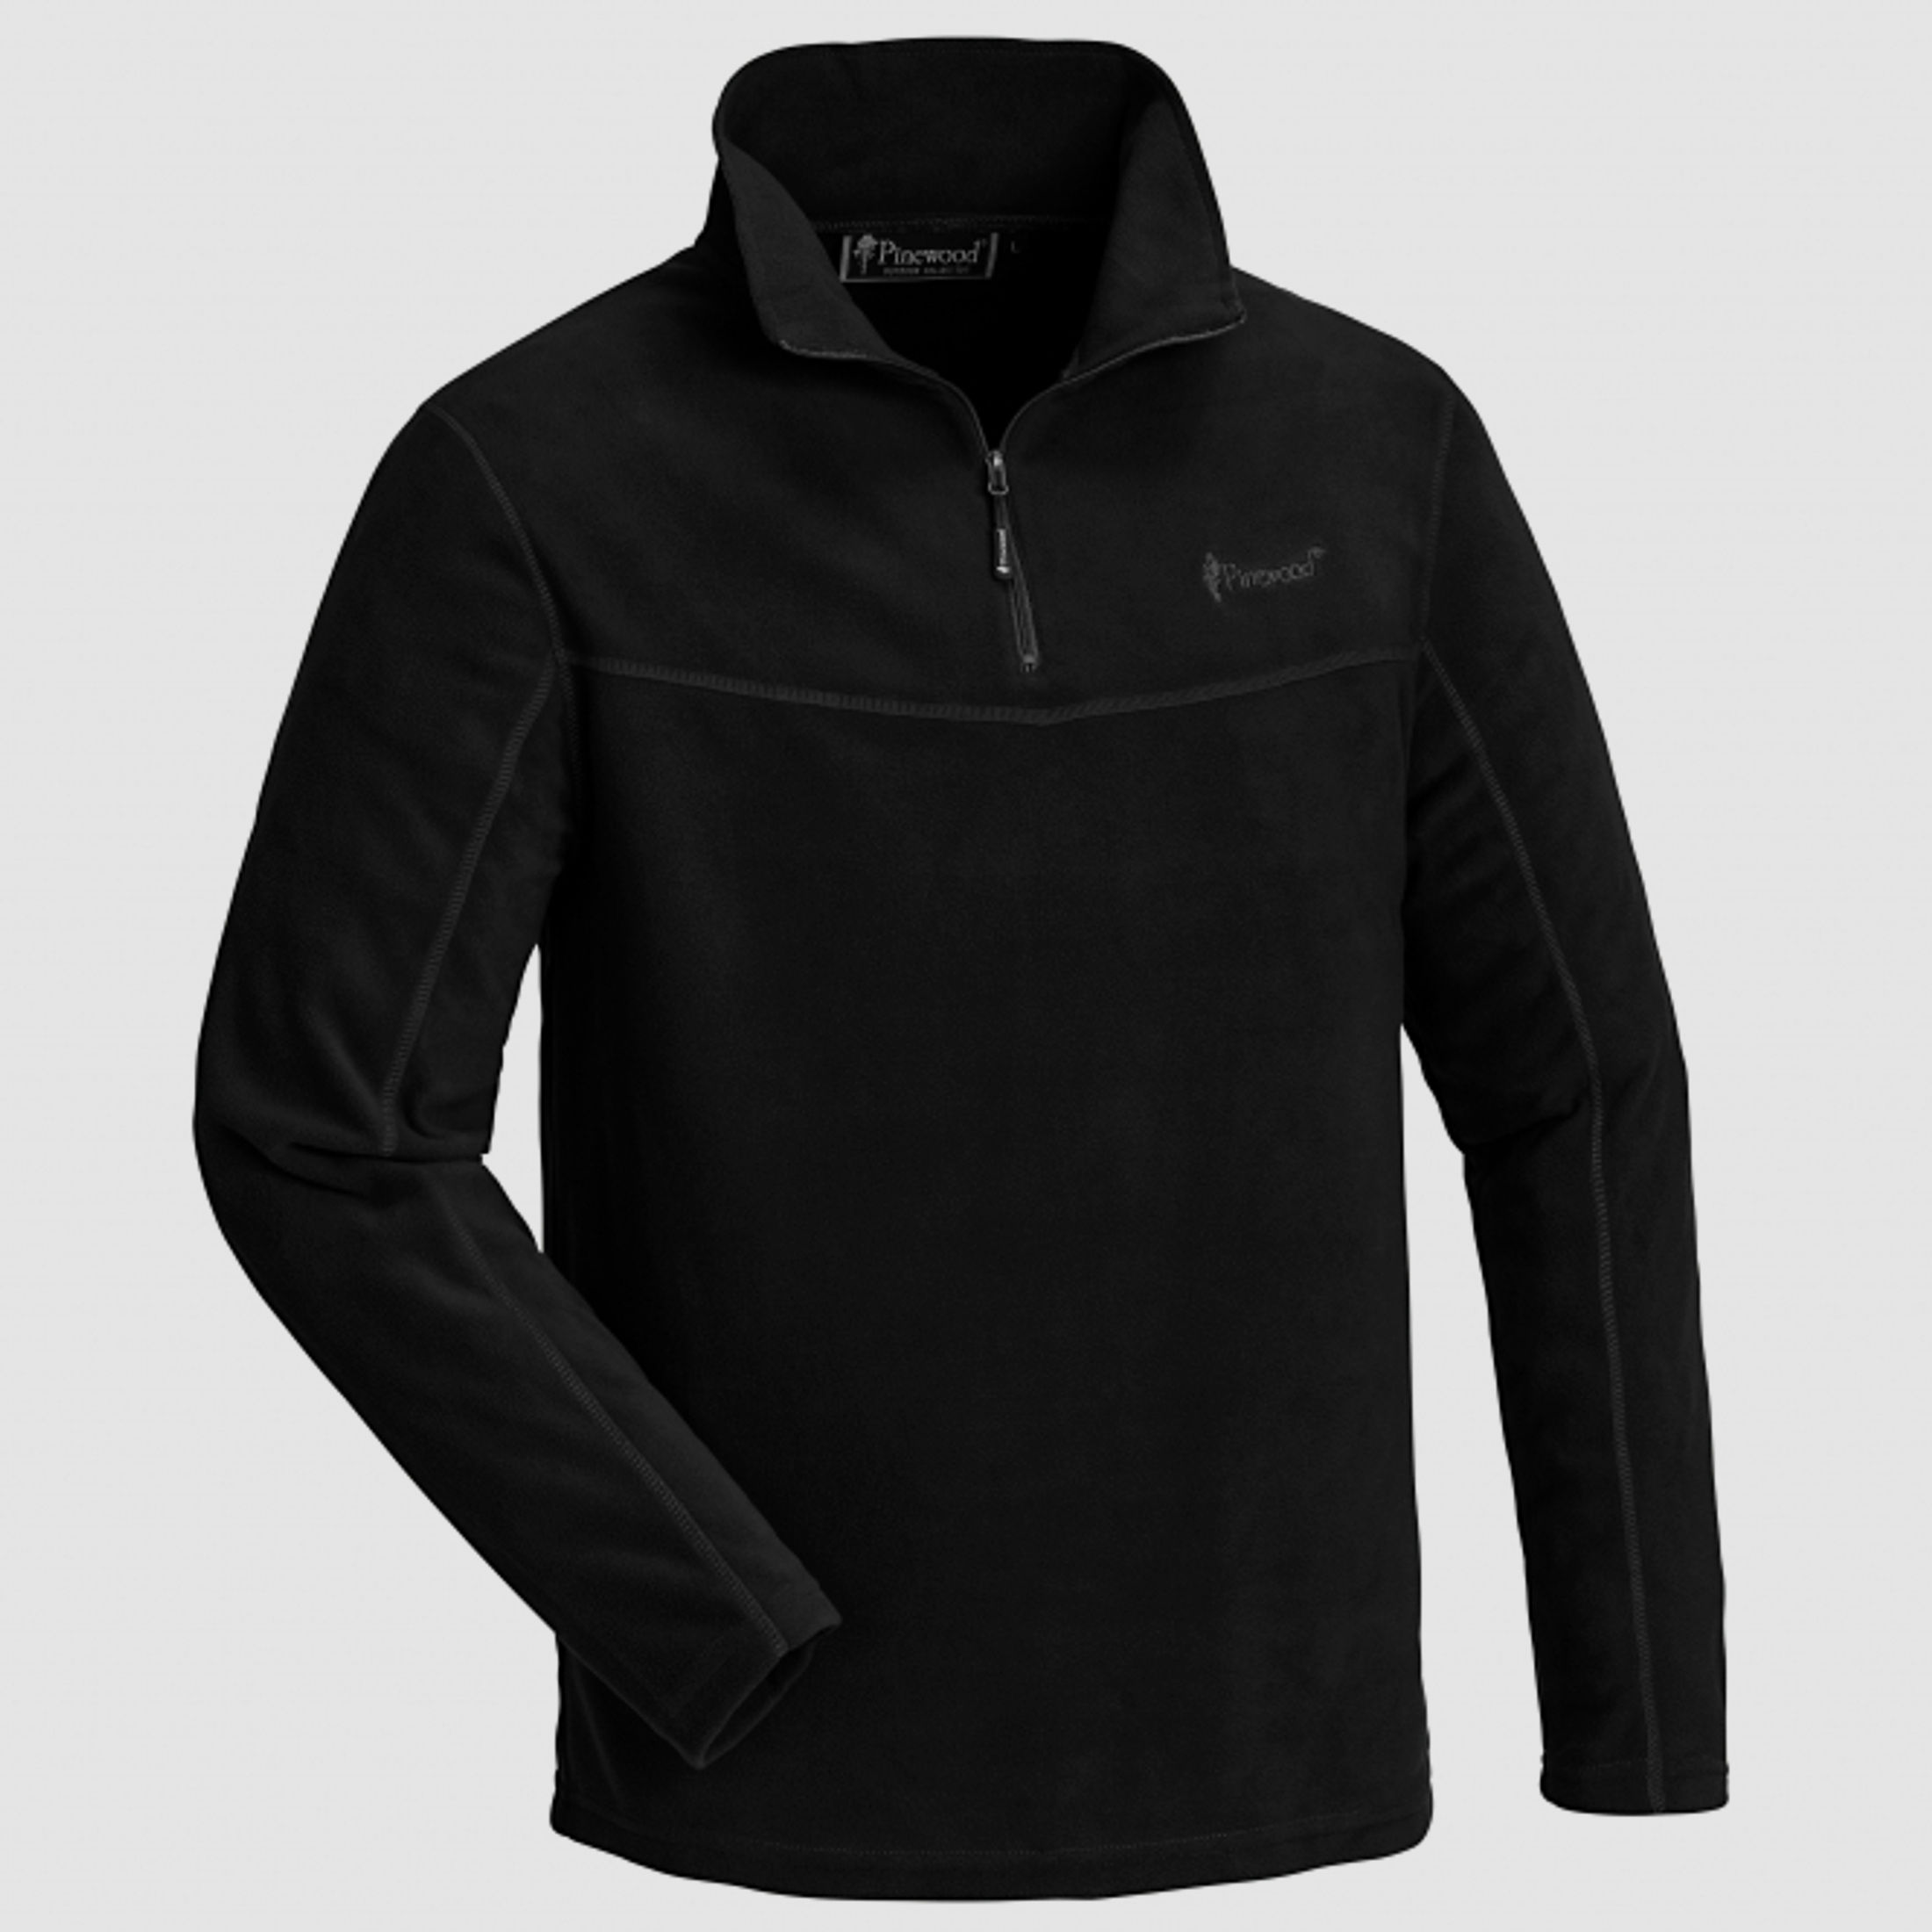 Pinewood       Pinewood   Herren Fleece-Sweater Tiveden (schwarz)